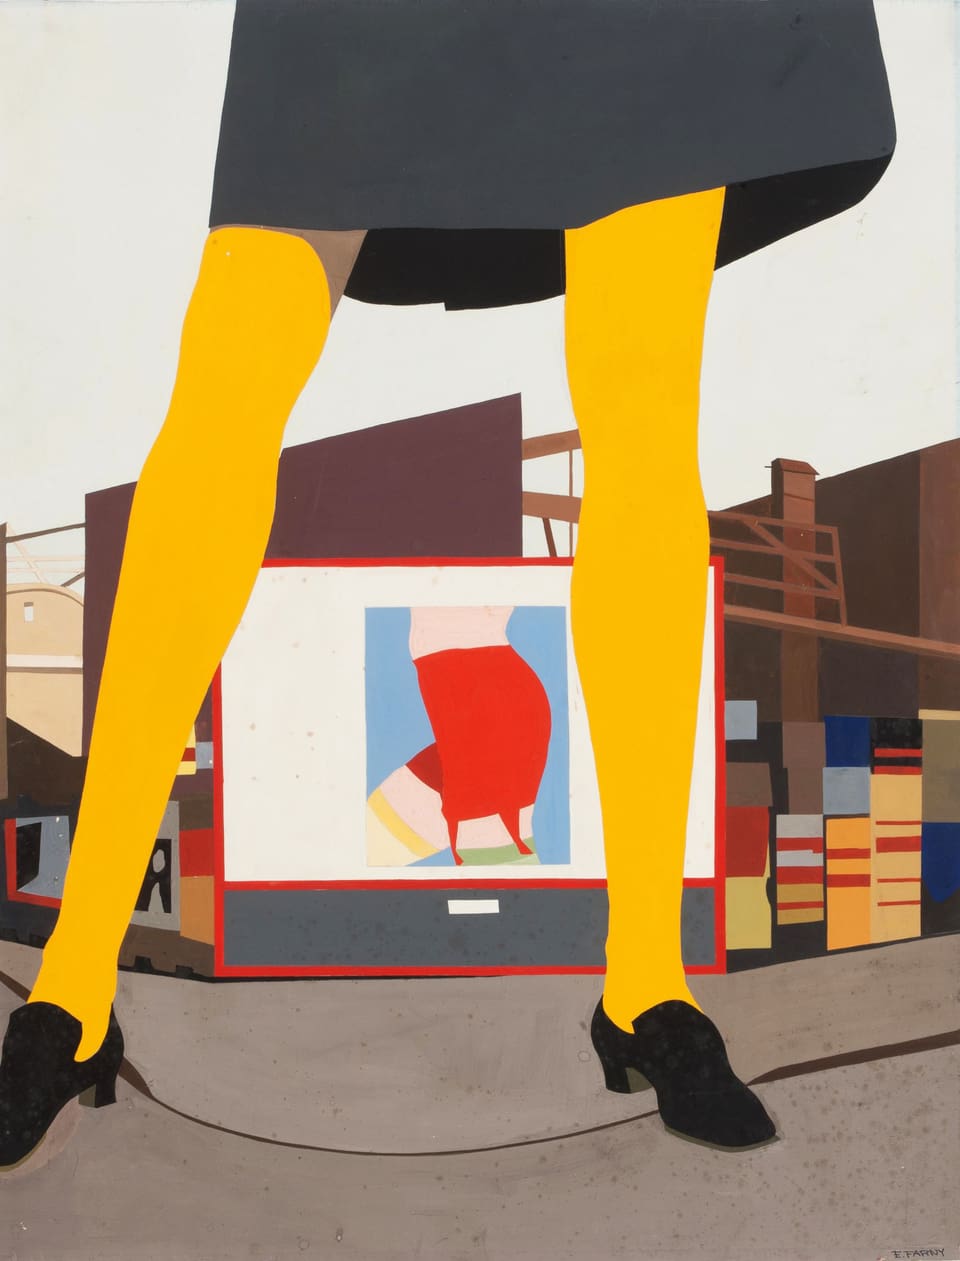 Acrylzeichnung: Durch die Beine einer Frau sieht man ein Werbeplakat für Damenunterwäsche.